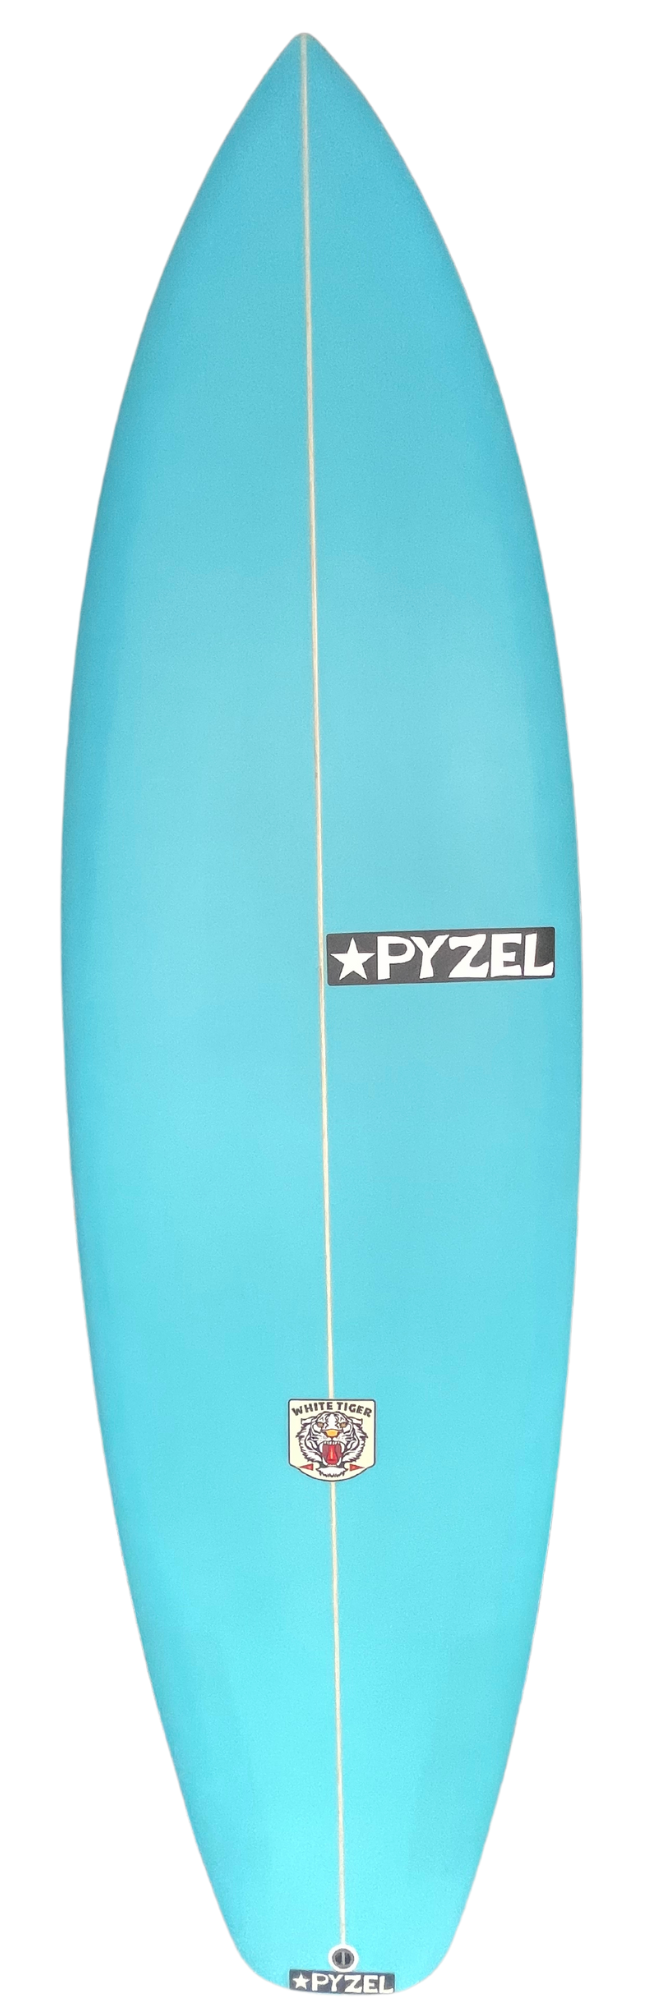 Planche de surf PYZEL White Tiger 6'2 - 40,9Lts FUTURES